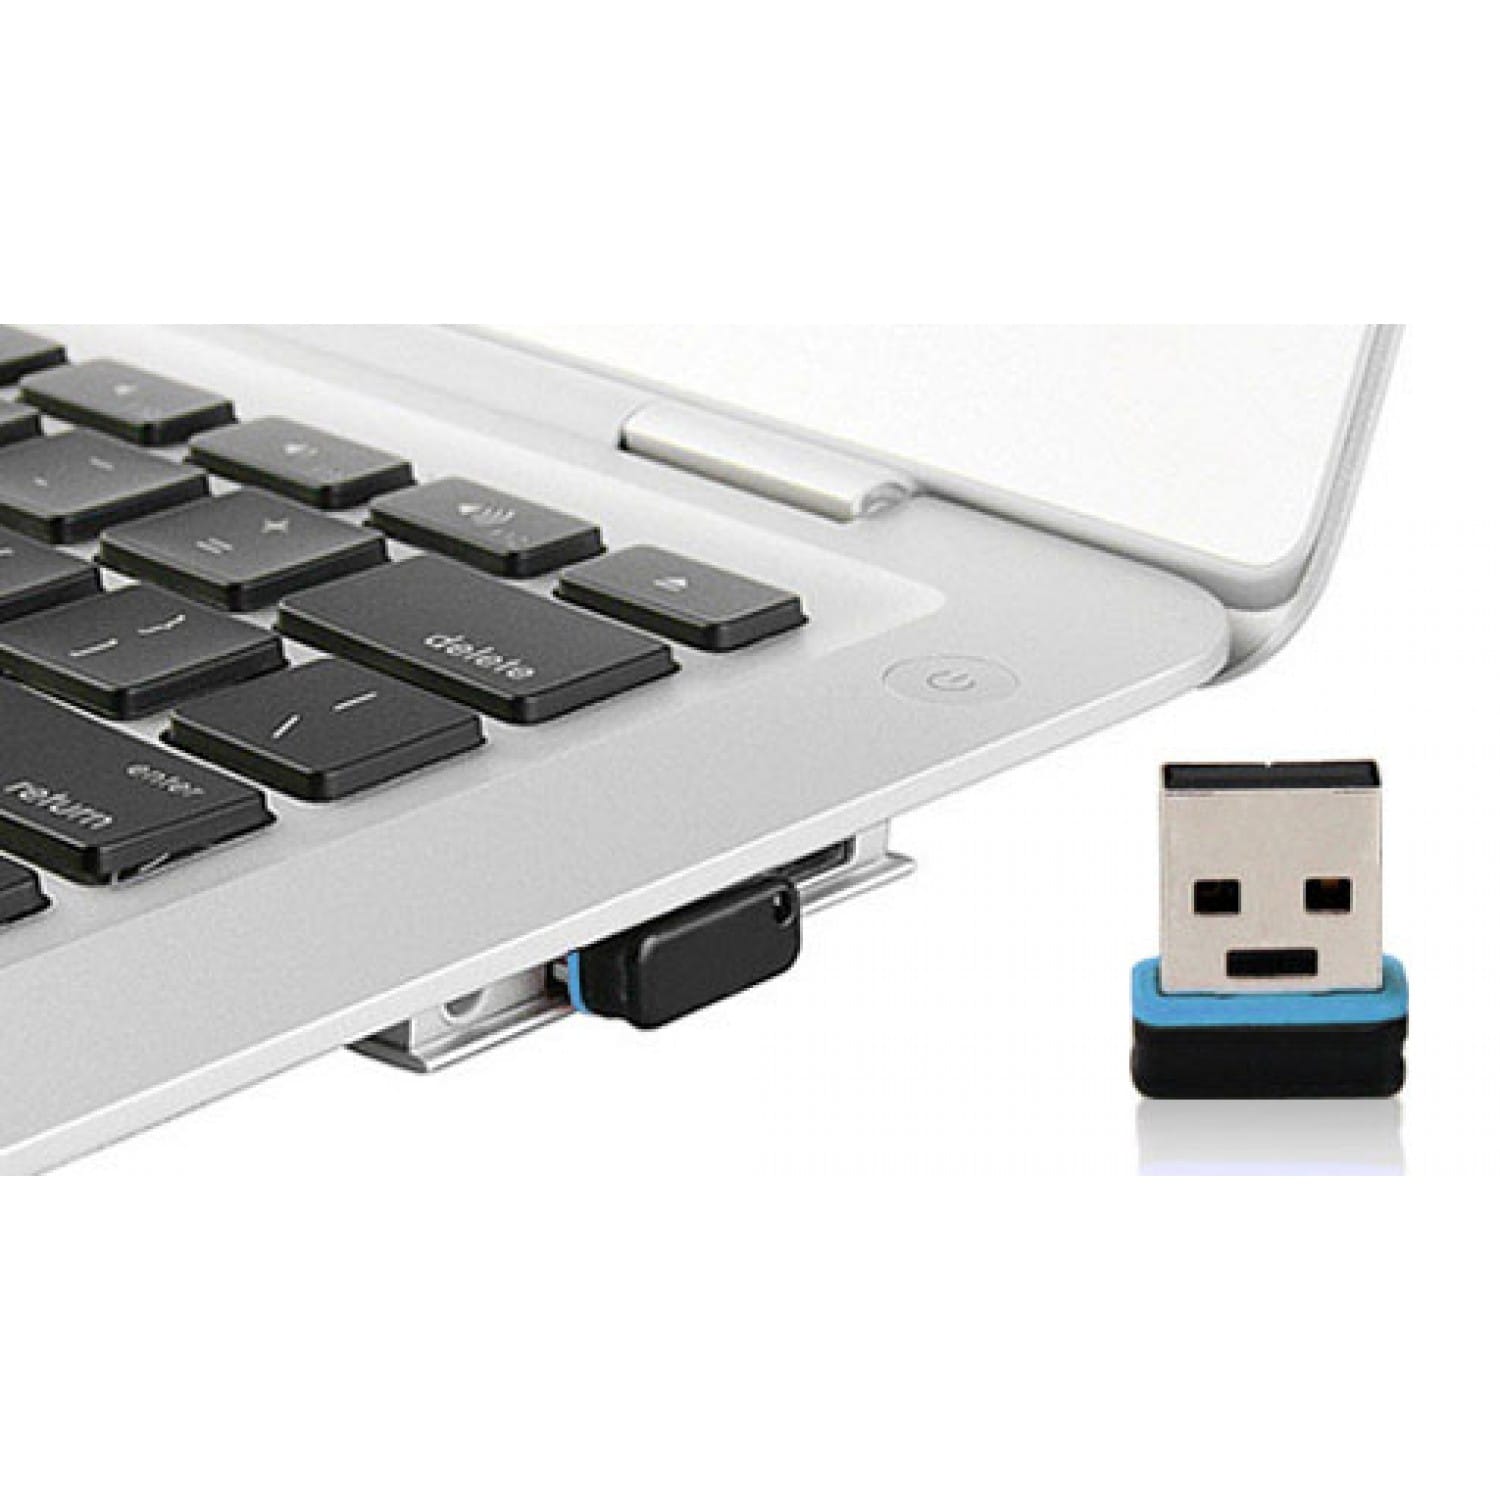 Clé USB 3.0 / micro USB pour téléphone portable / tablette vers pc - 64 Go